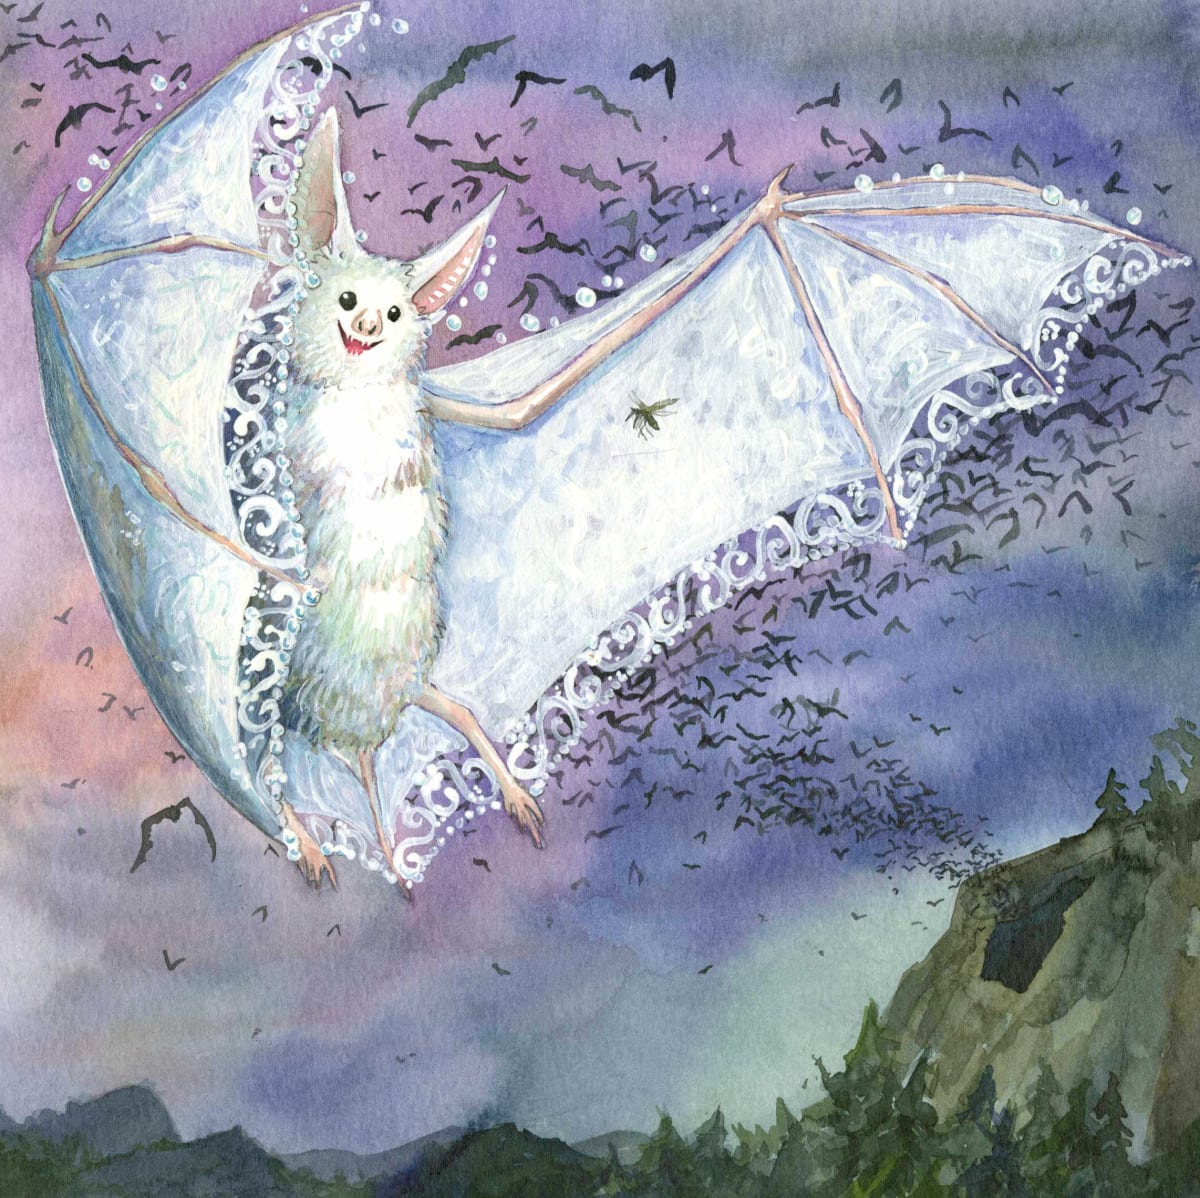 Zelda the too-pretty bat: Flying  Image: illustration, p05 from the picture book "Le chauve-souris qui pleurait d'être trop belle" text ©1999 Chrystine Brouillet ©Les éditions de la courte échelle cropped